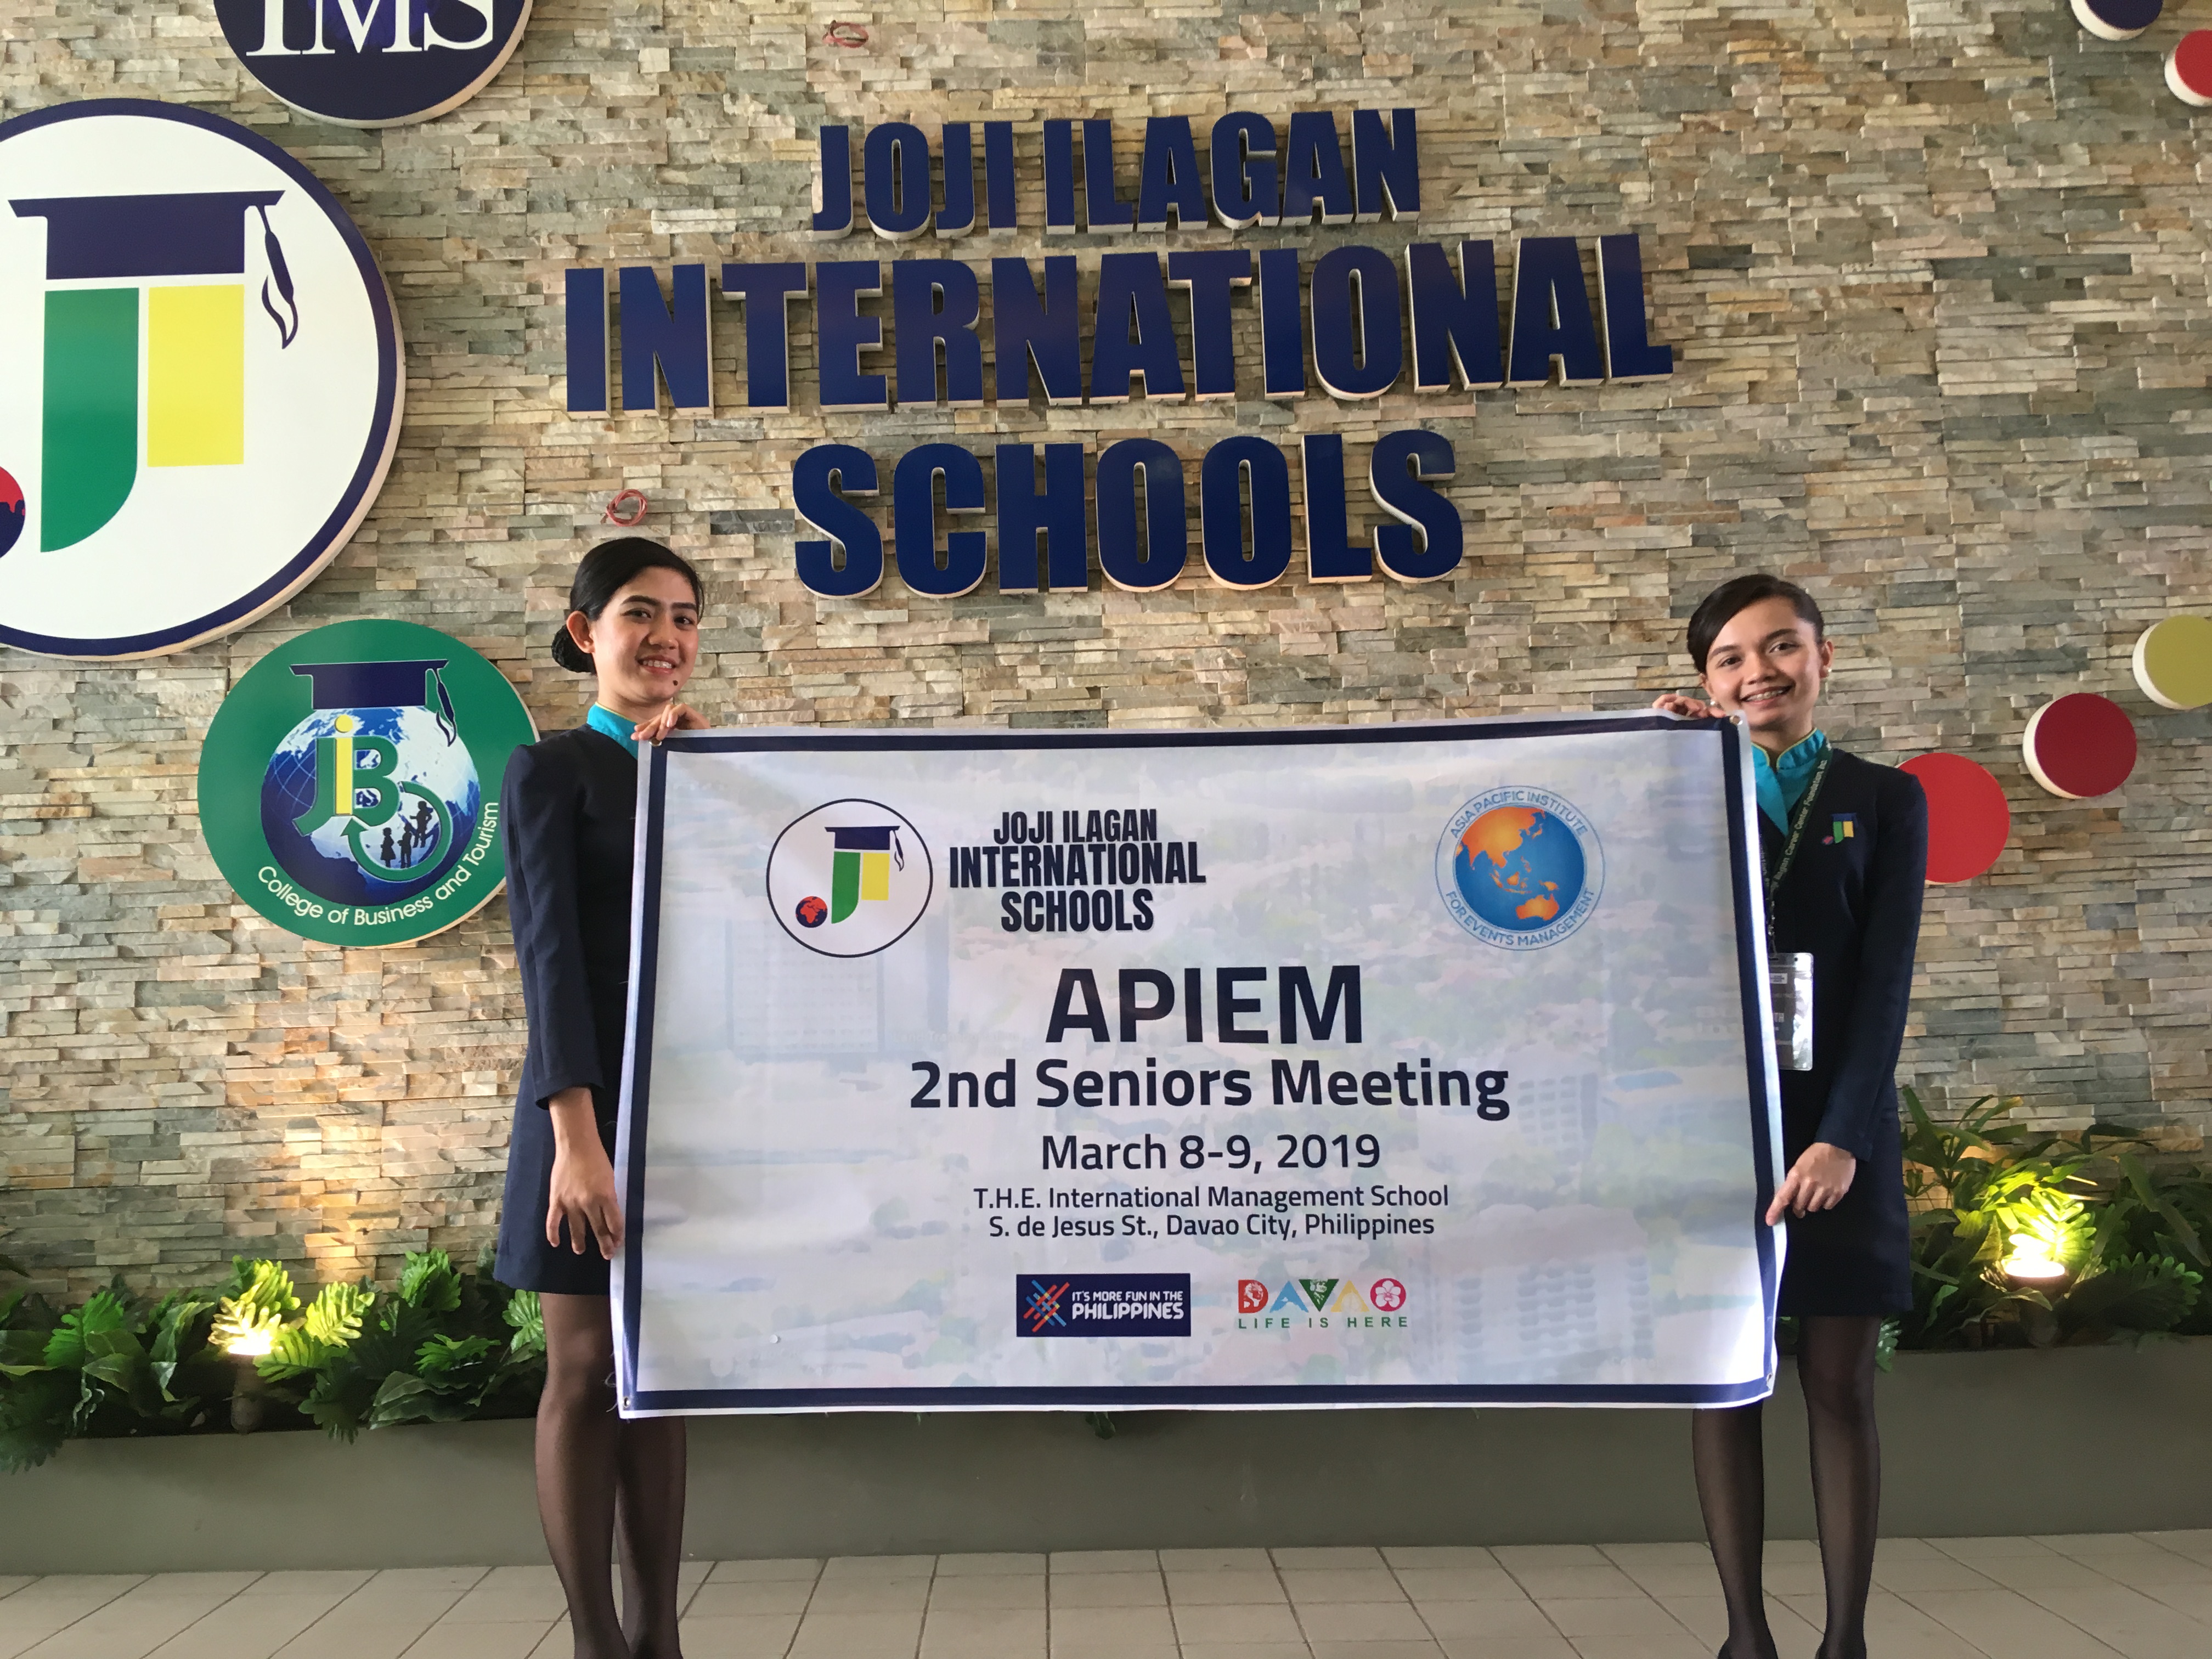 APIEM Awards the APIEM Certified Event Planner Qualification to Joji Ilagan International Schools Students